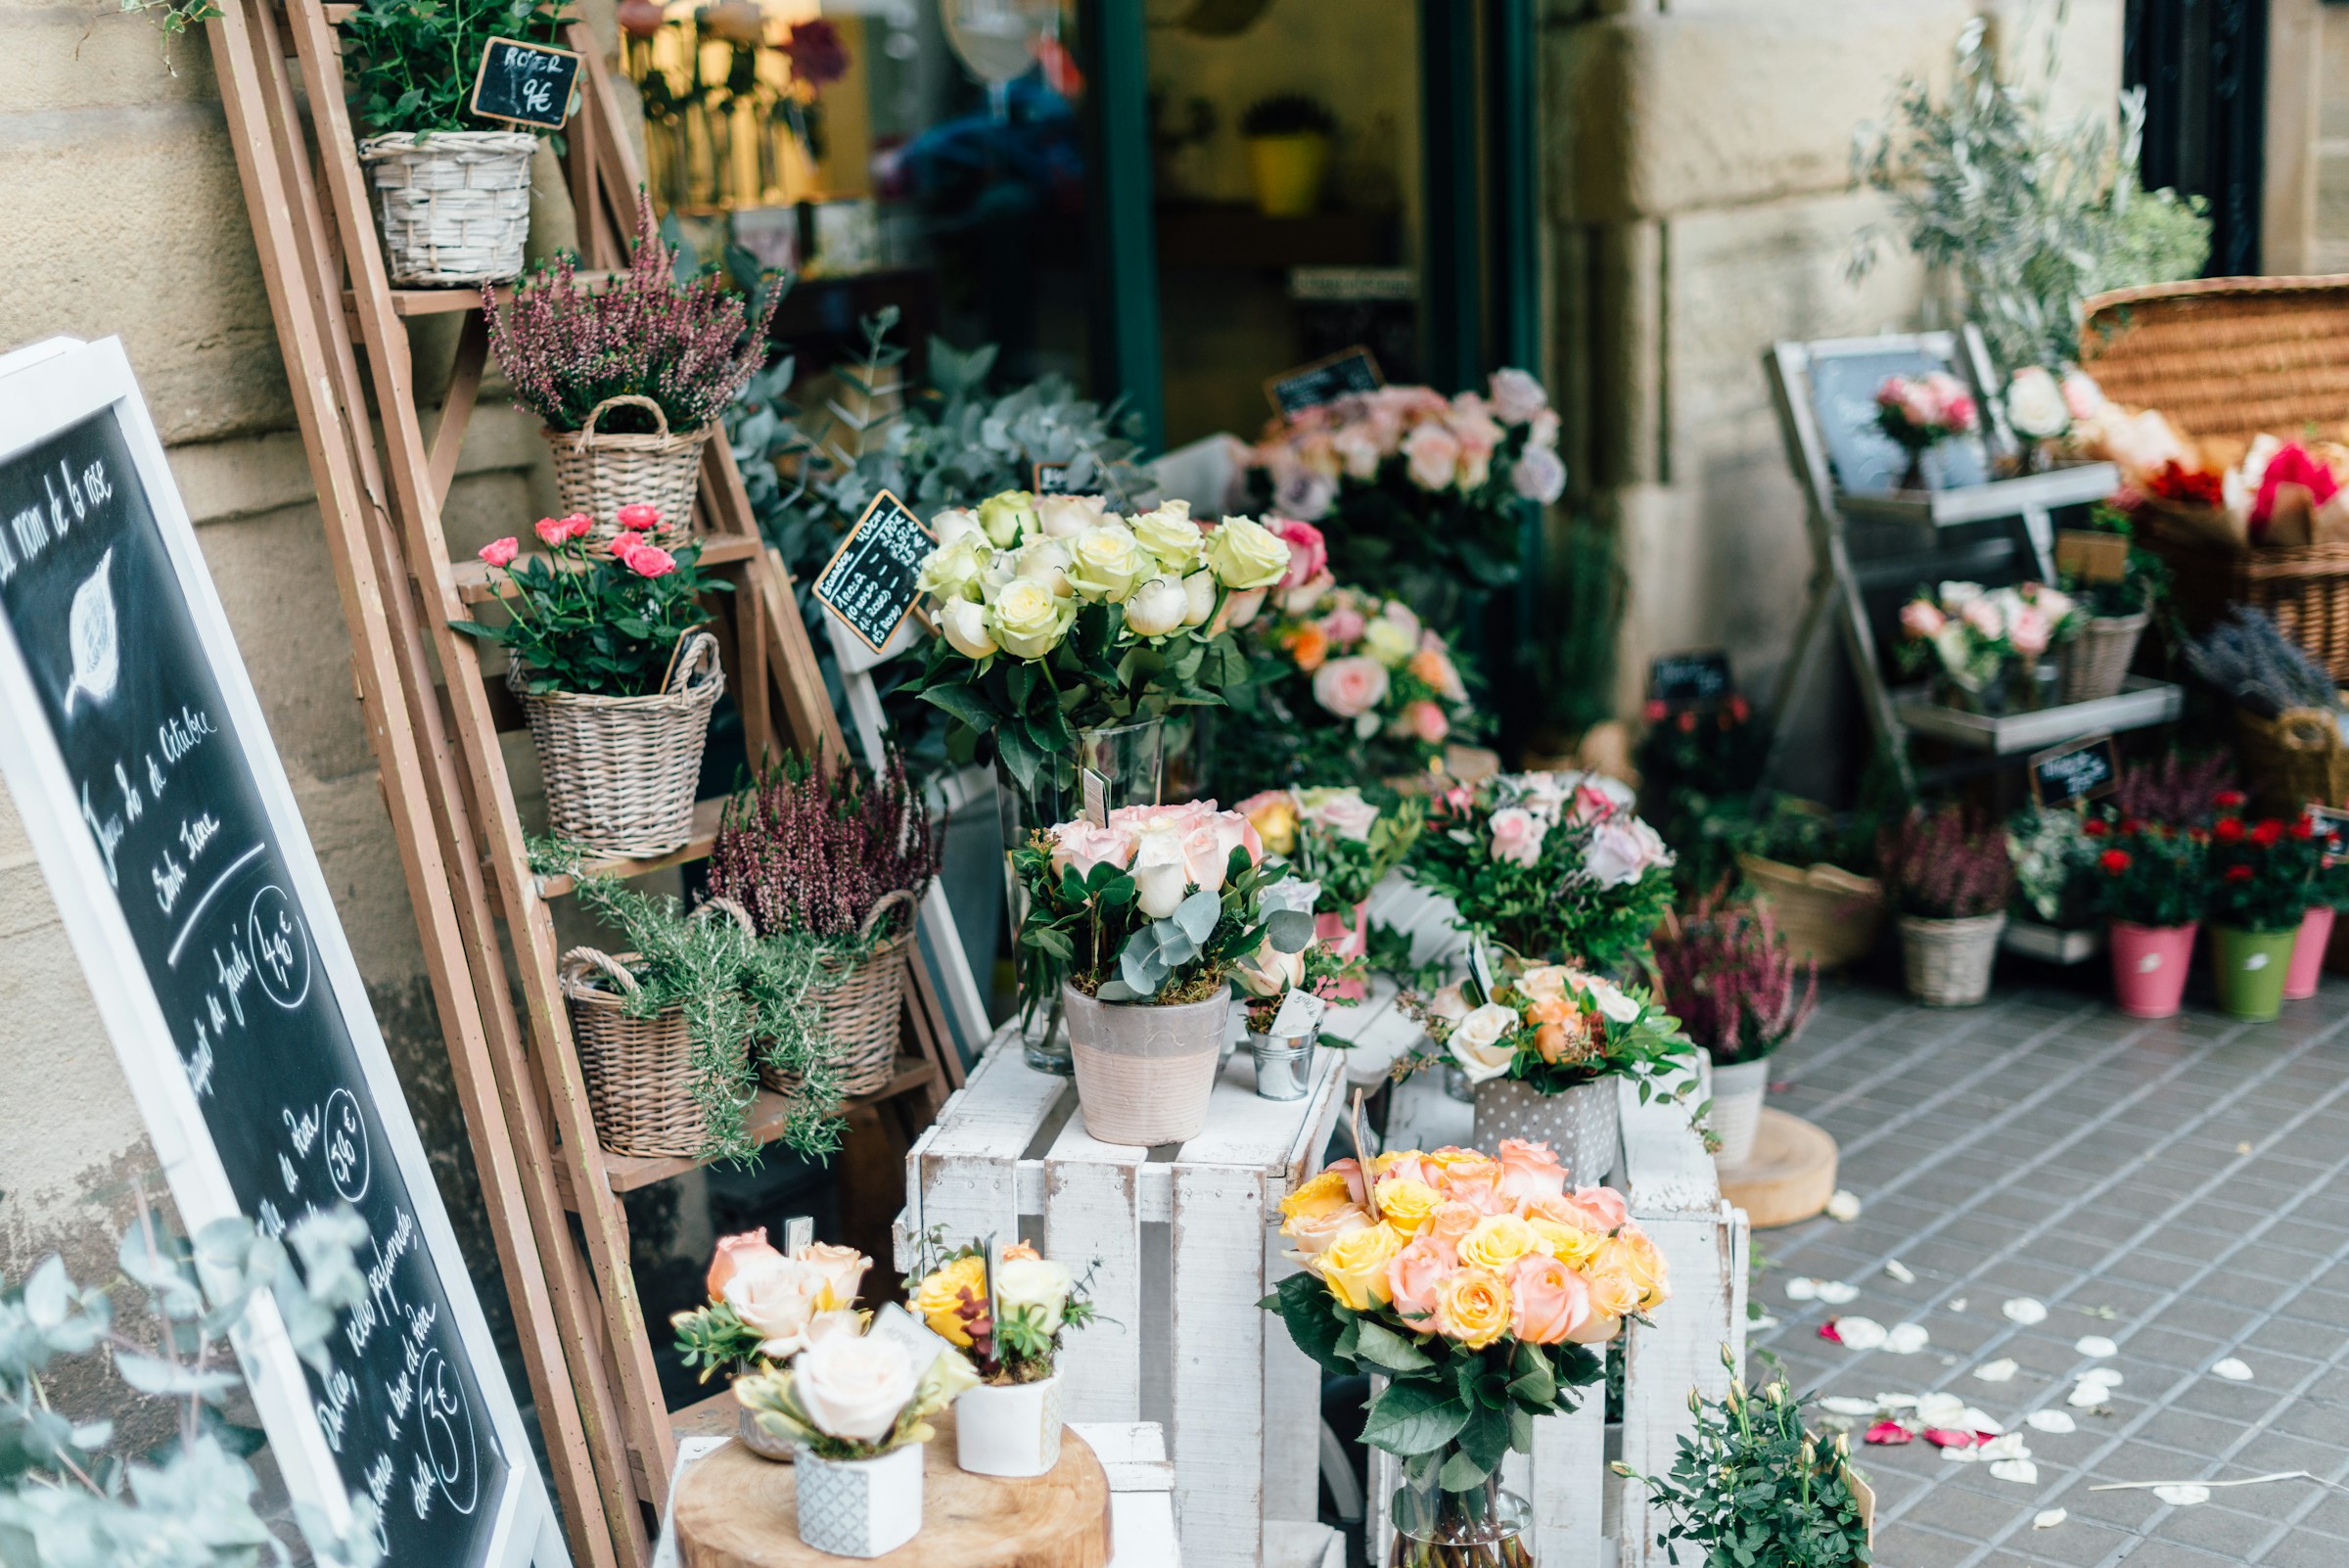 A flower shop | Source: Unsplash